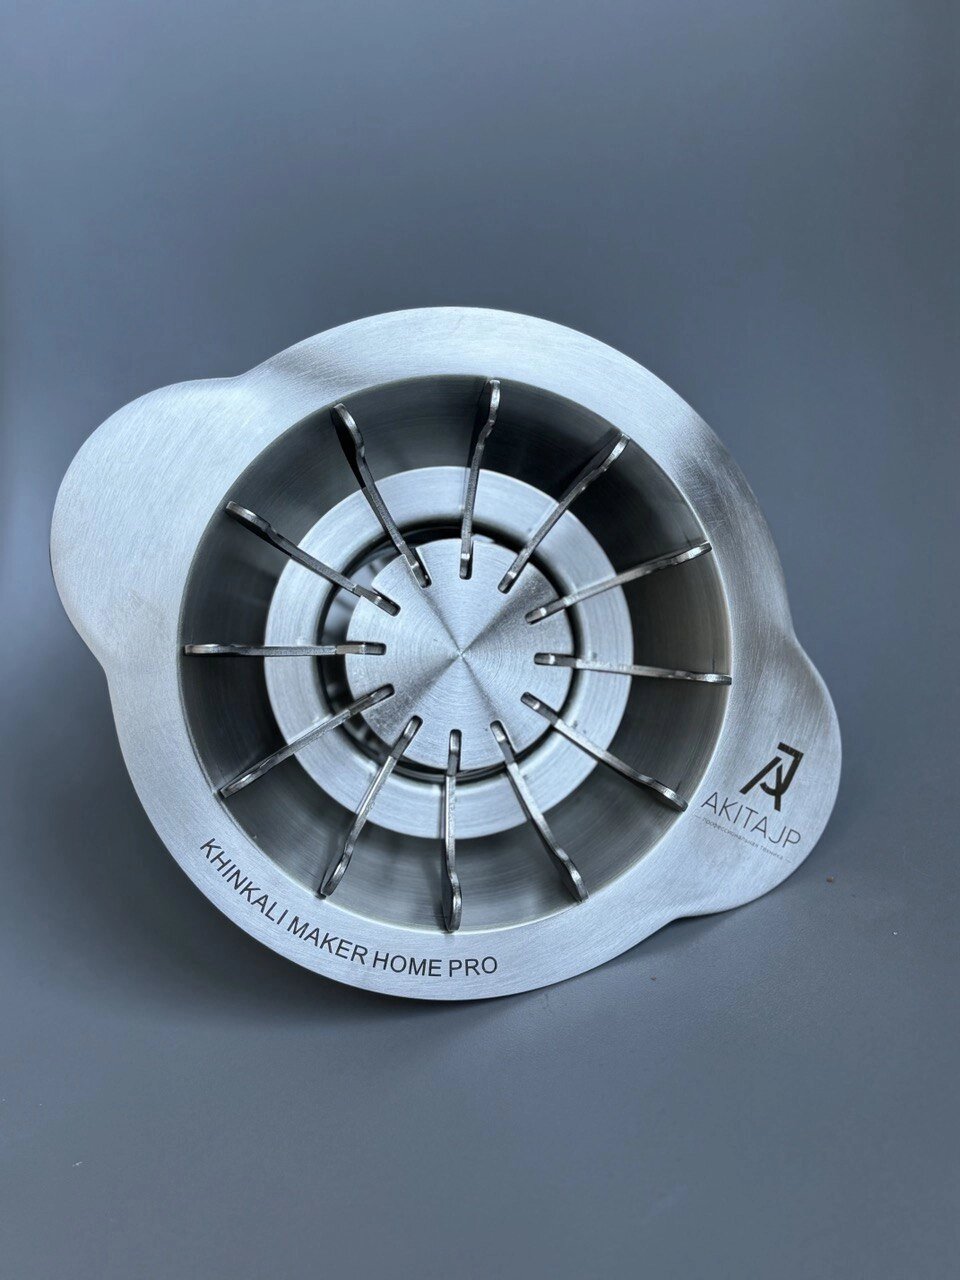 Ручной хинкальный аппарат для приготовления хинкали AKITAJP Classic "Khinkali" Maker Machine Home Pro пельменница от компании Официальный сайт дистрибьютора BERKEL RUSSIA - фото 1